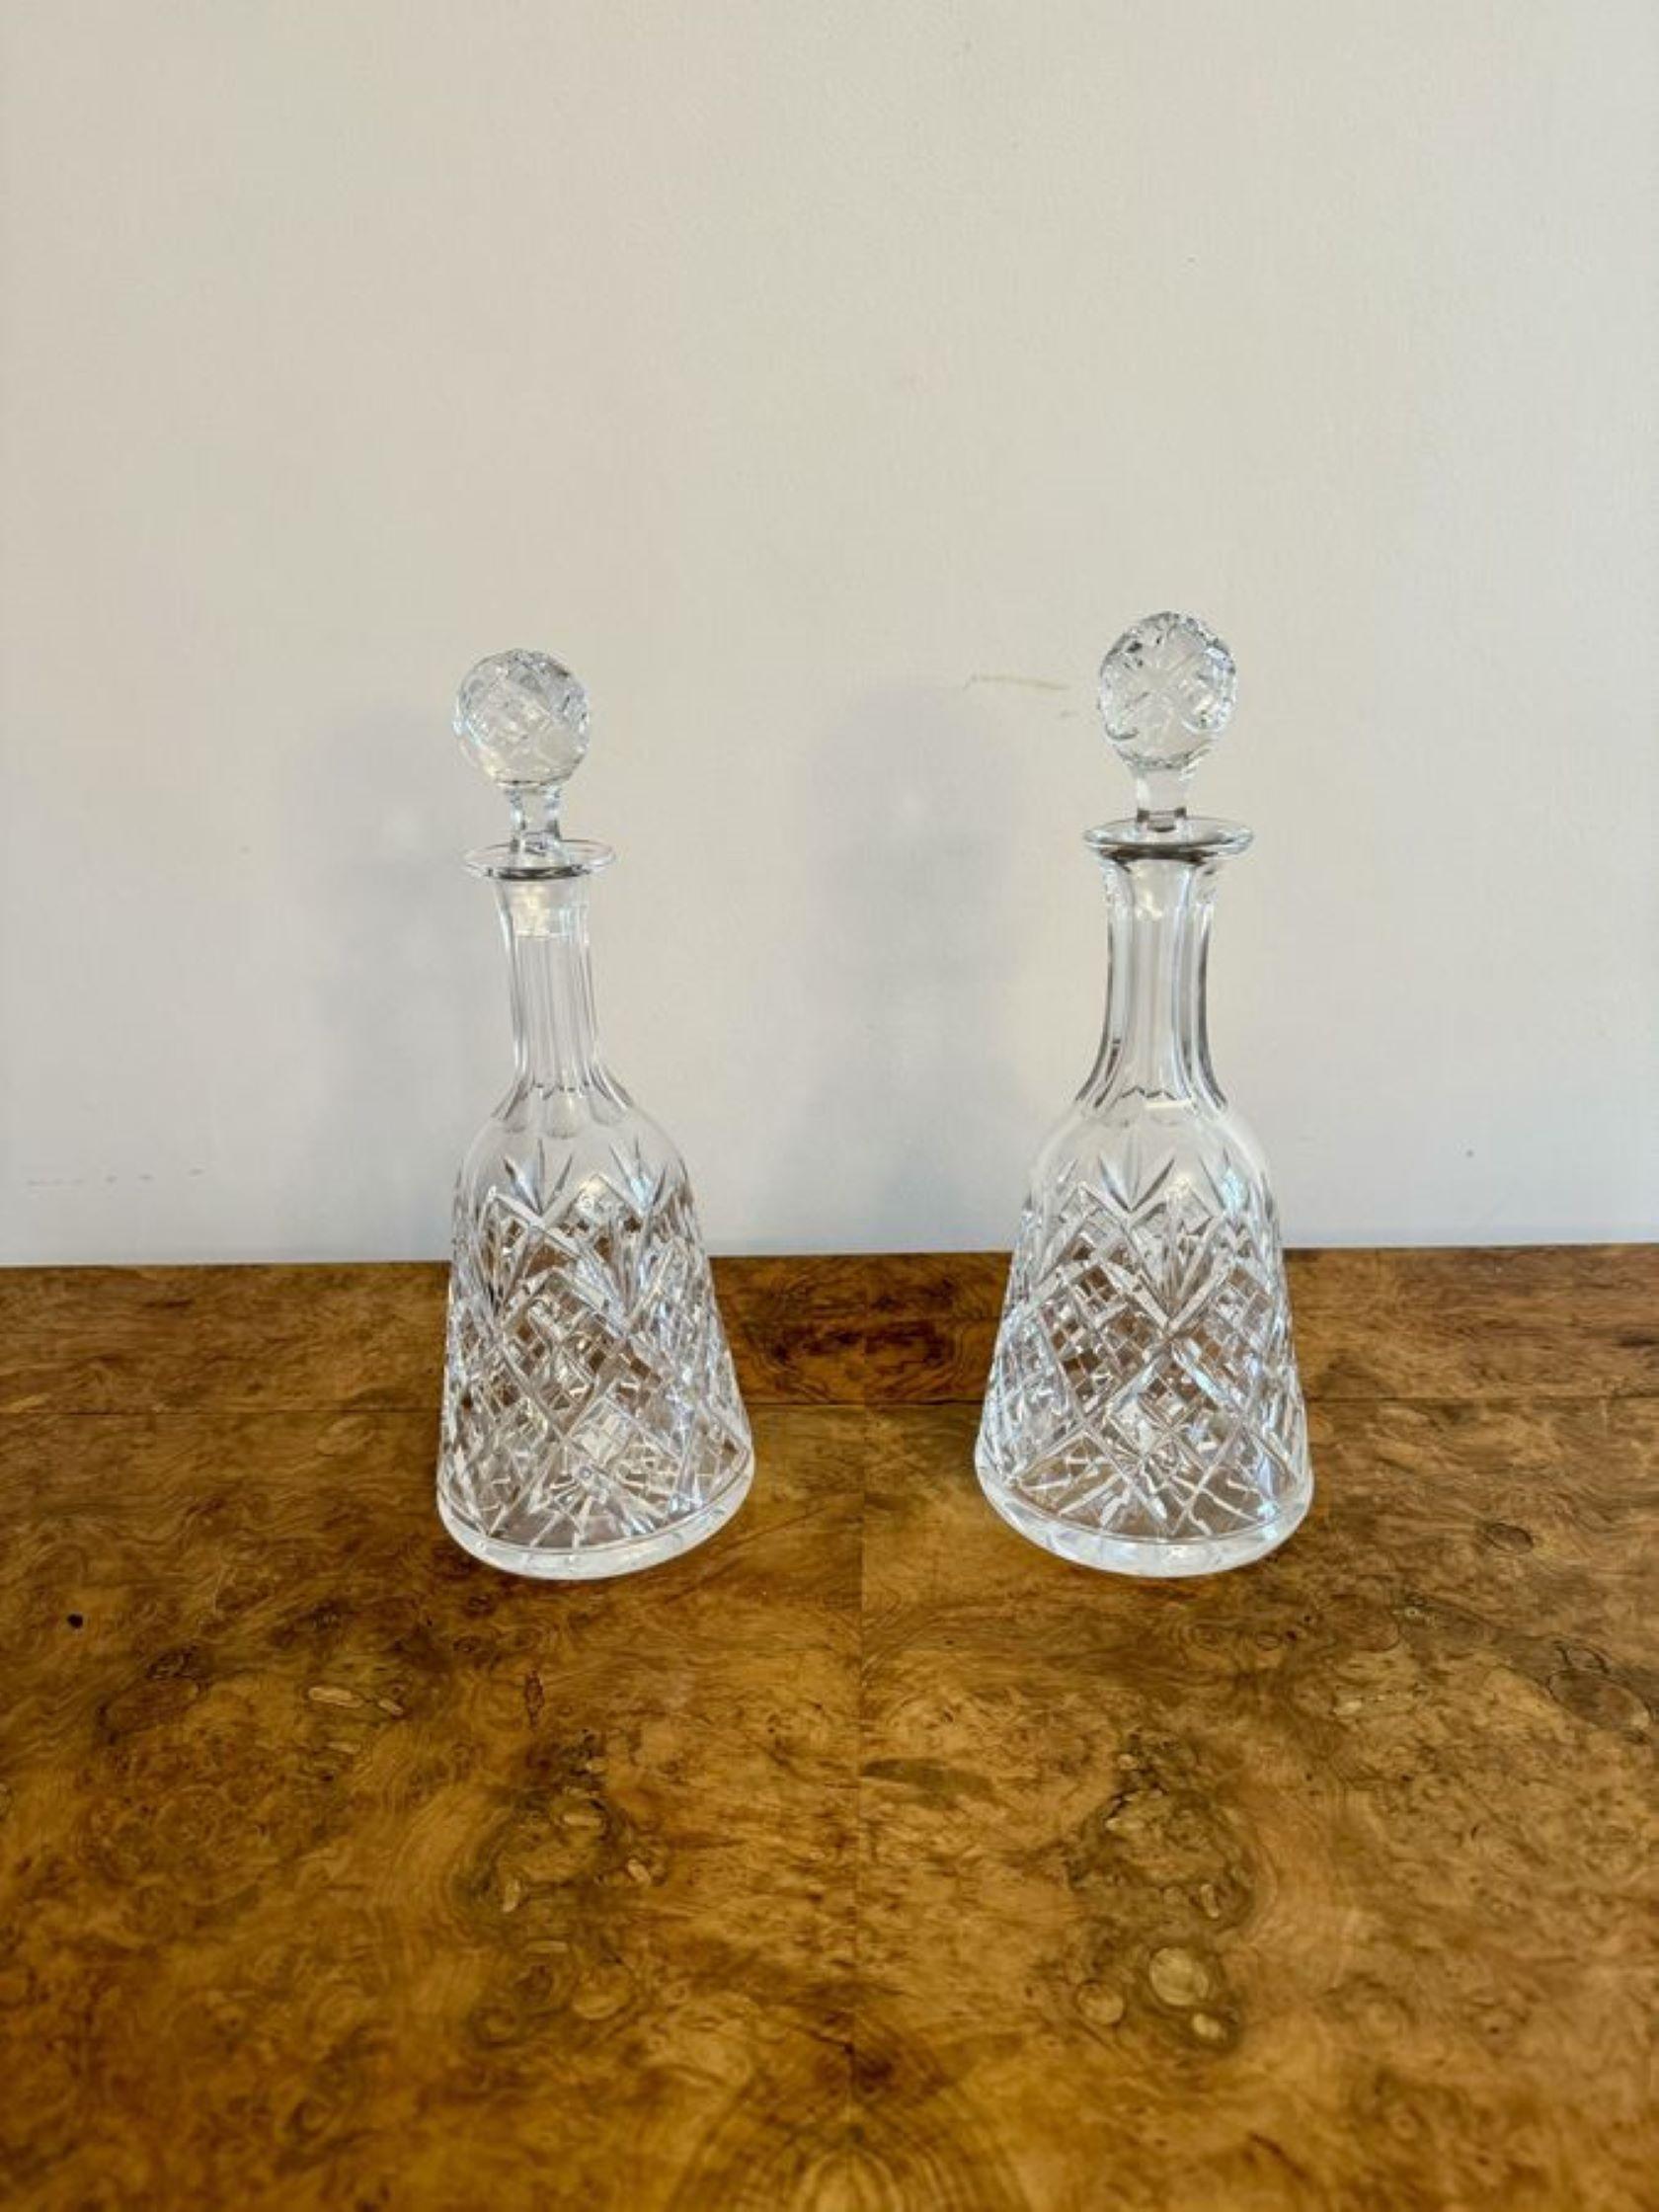 Charmante paire de carafes anciennes de style édouardien en forme de cloche avec des corps en verre taillé et des bouchons en verre taillé d'origine.

D. 1900